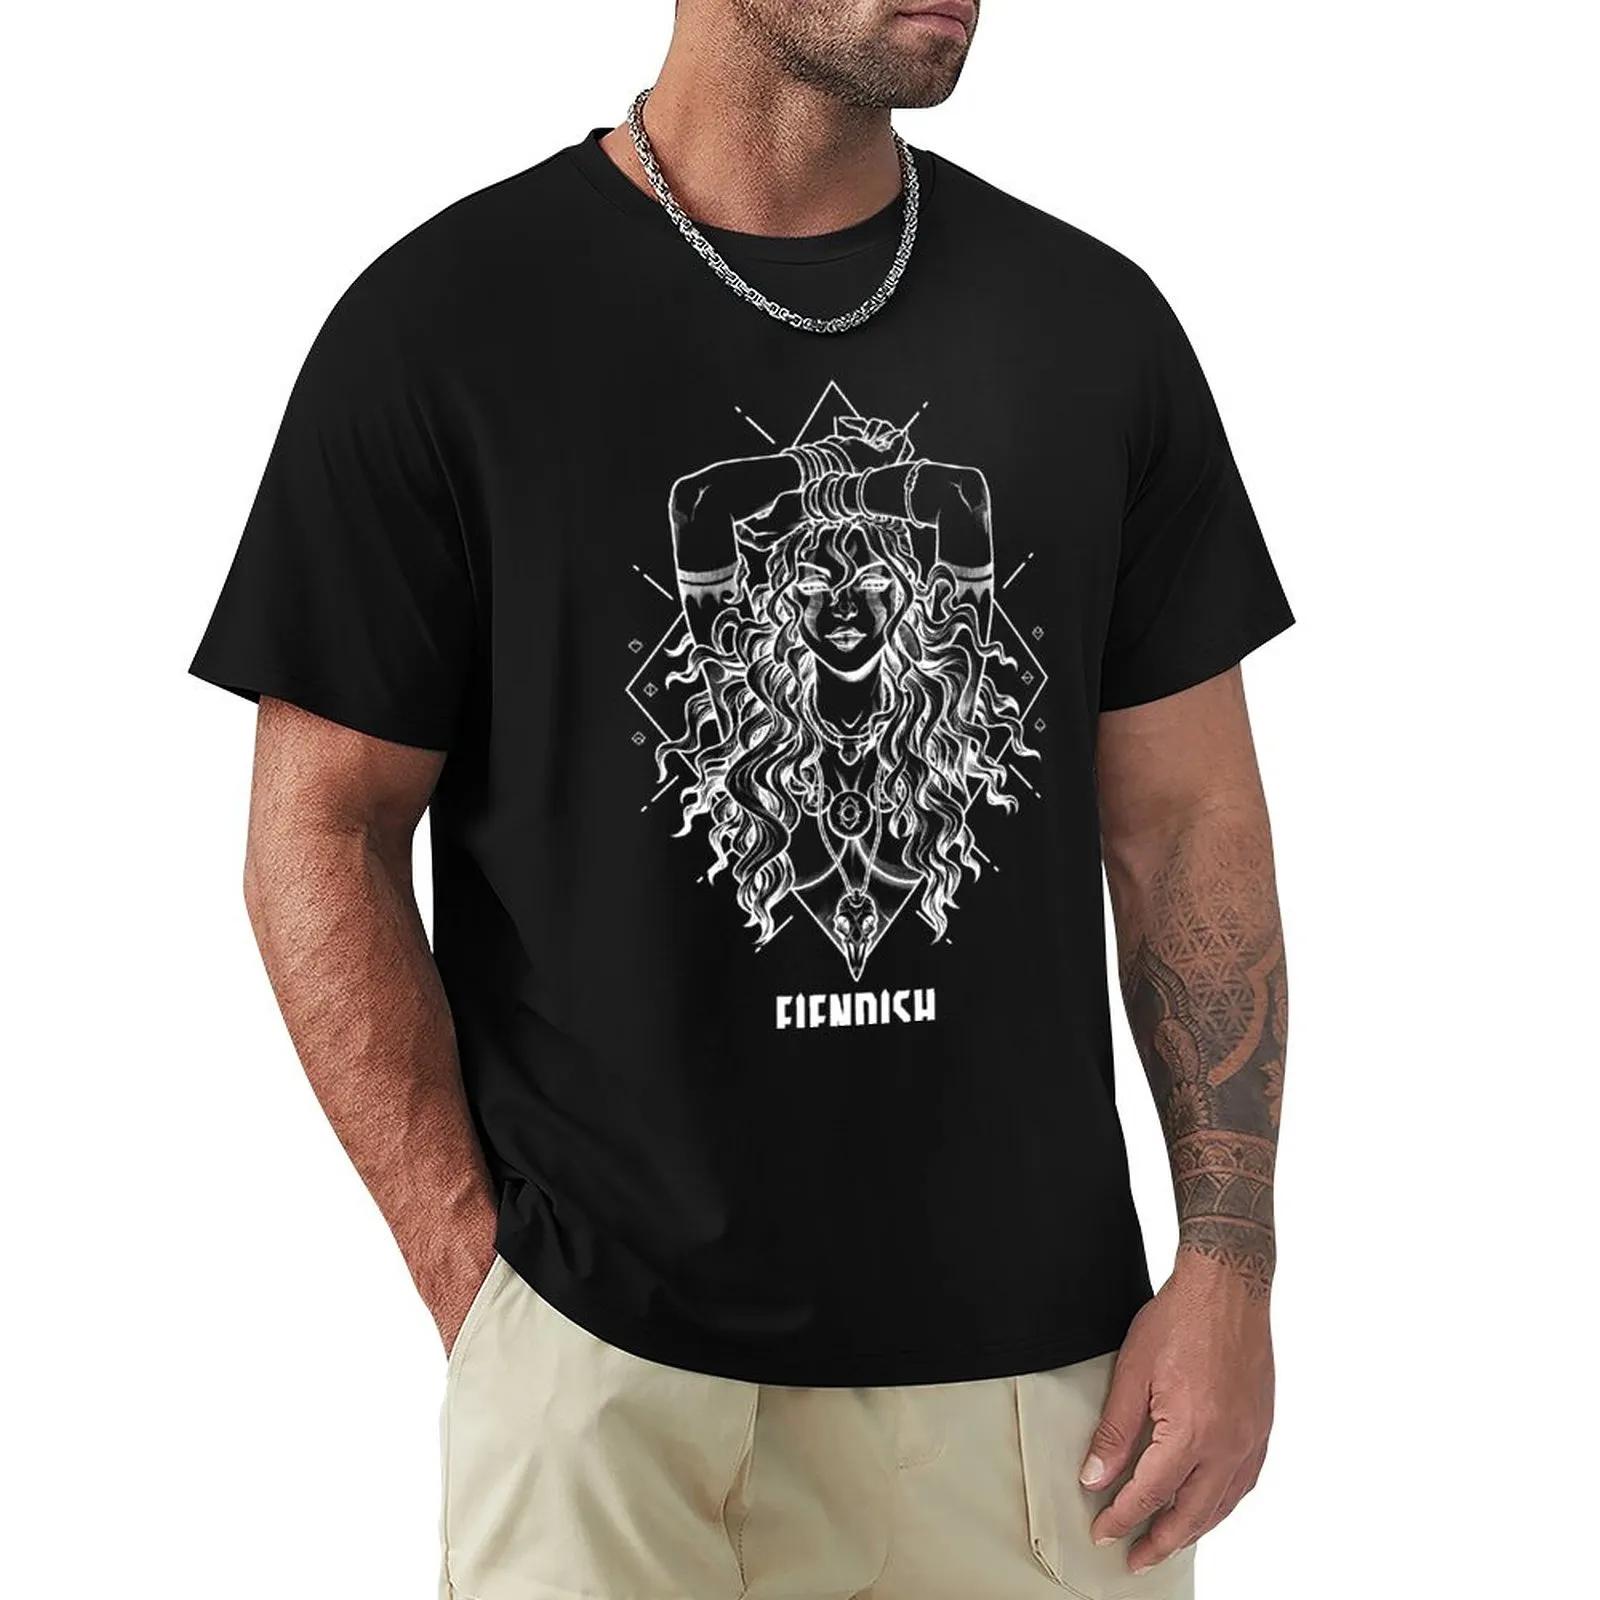 FIENDISH-라그니에라-화이트 티셔츠, 남자 의류, 애니메이션 남자 재미있는 티셔츠